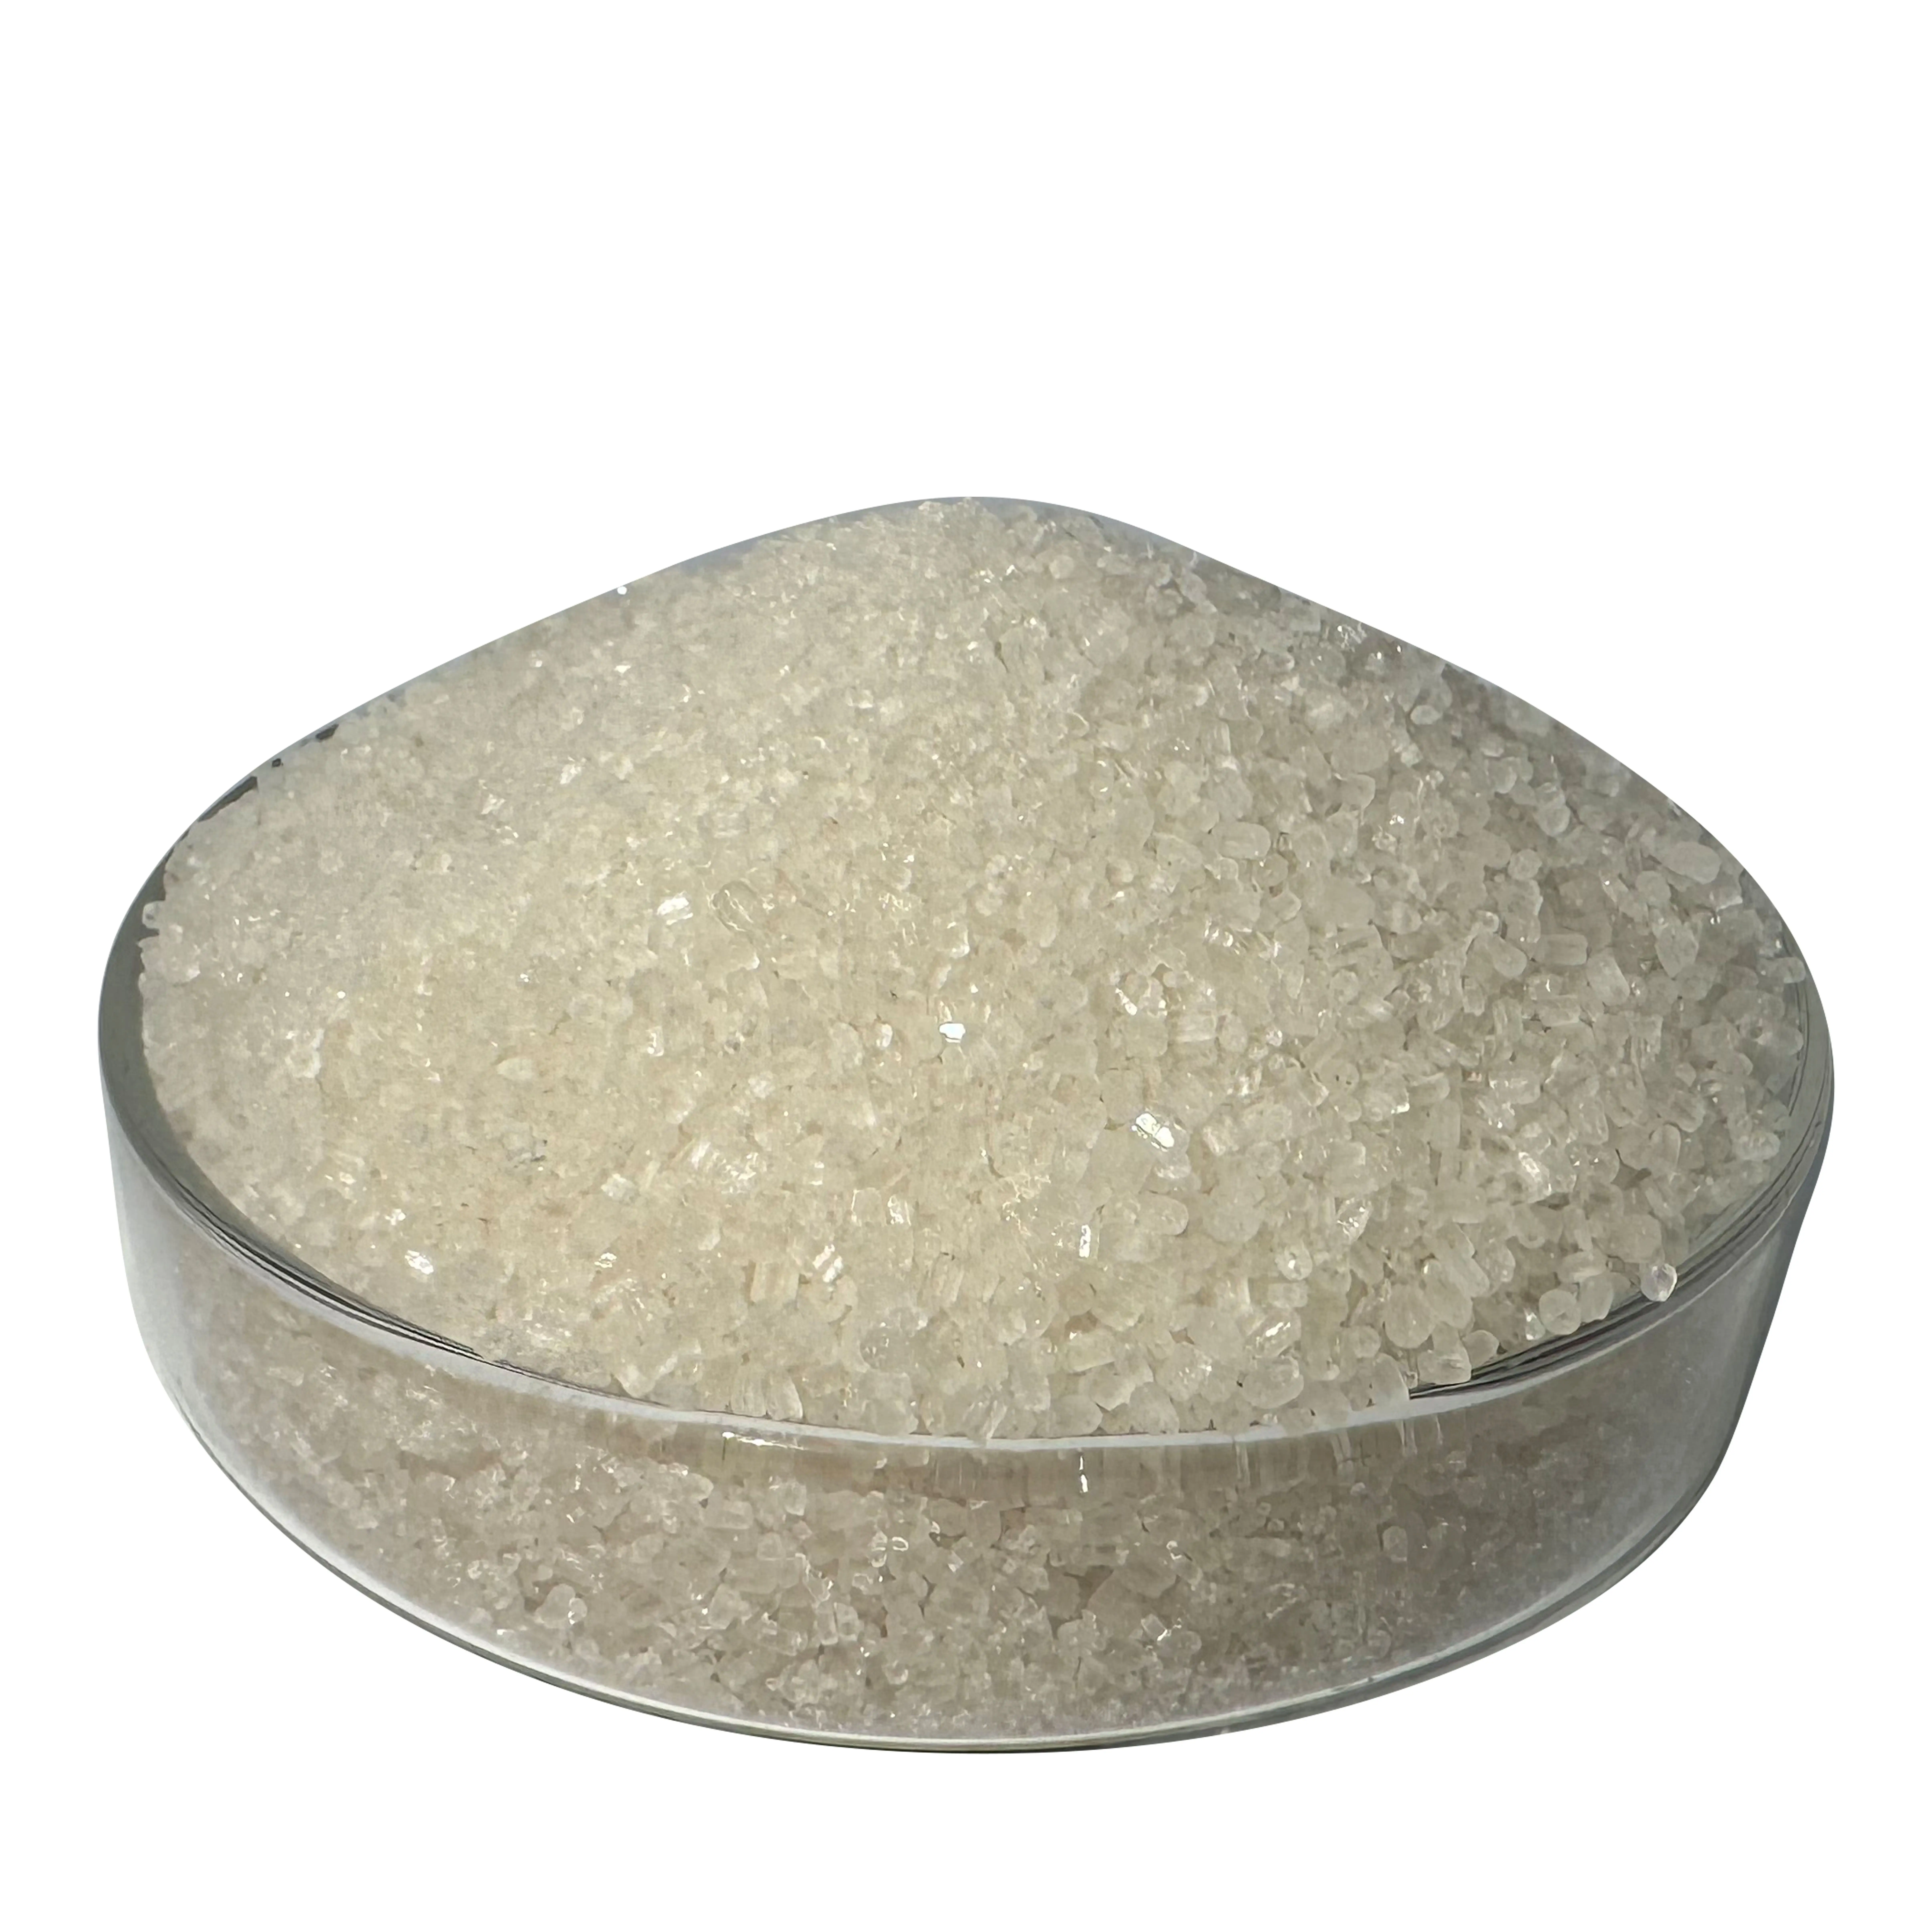 Stickstoff dünger N 21% S 24% Ammoniums ulfat in Kristall-Caprolactam-Qualität für landwirtschaft liche Düngemittel